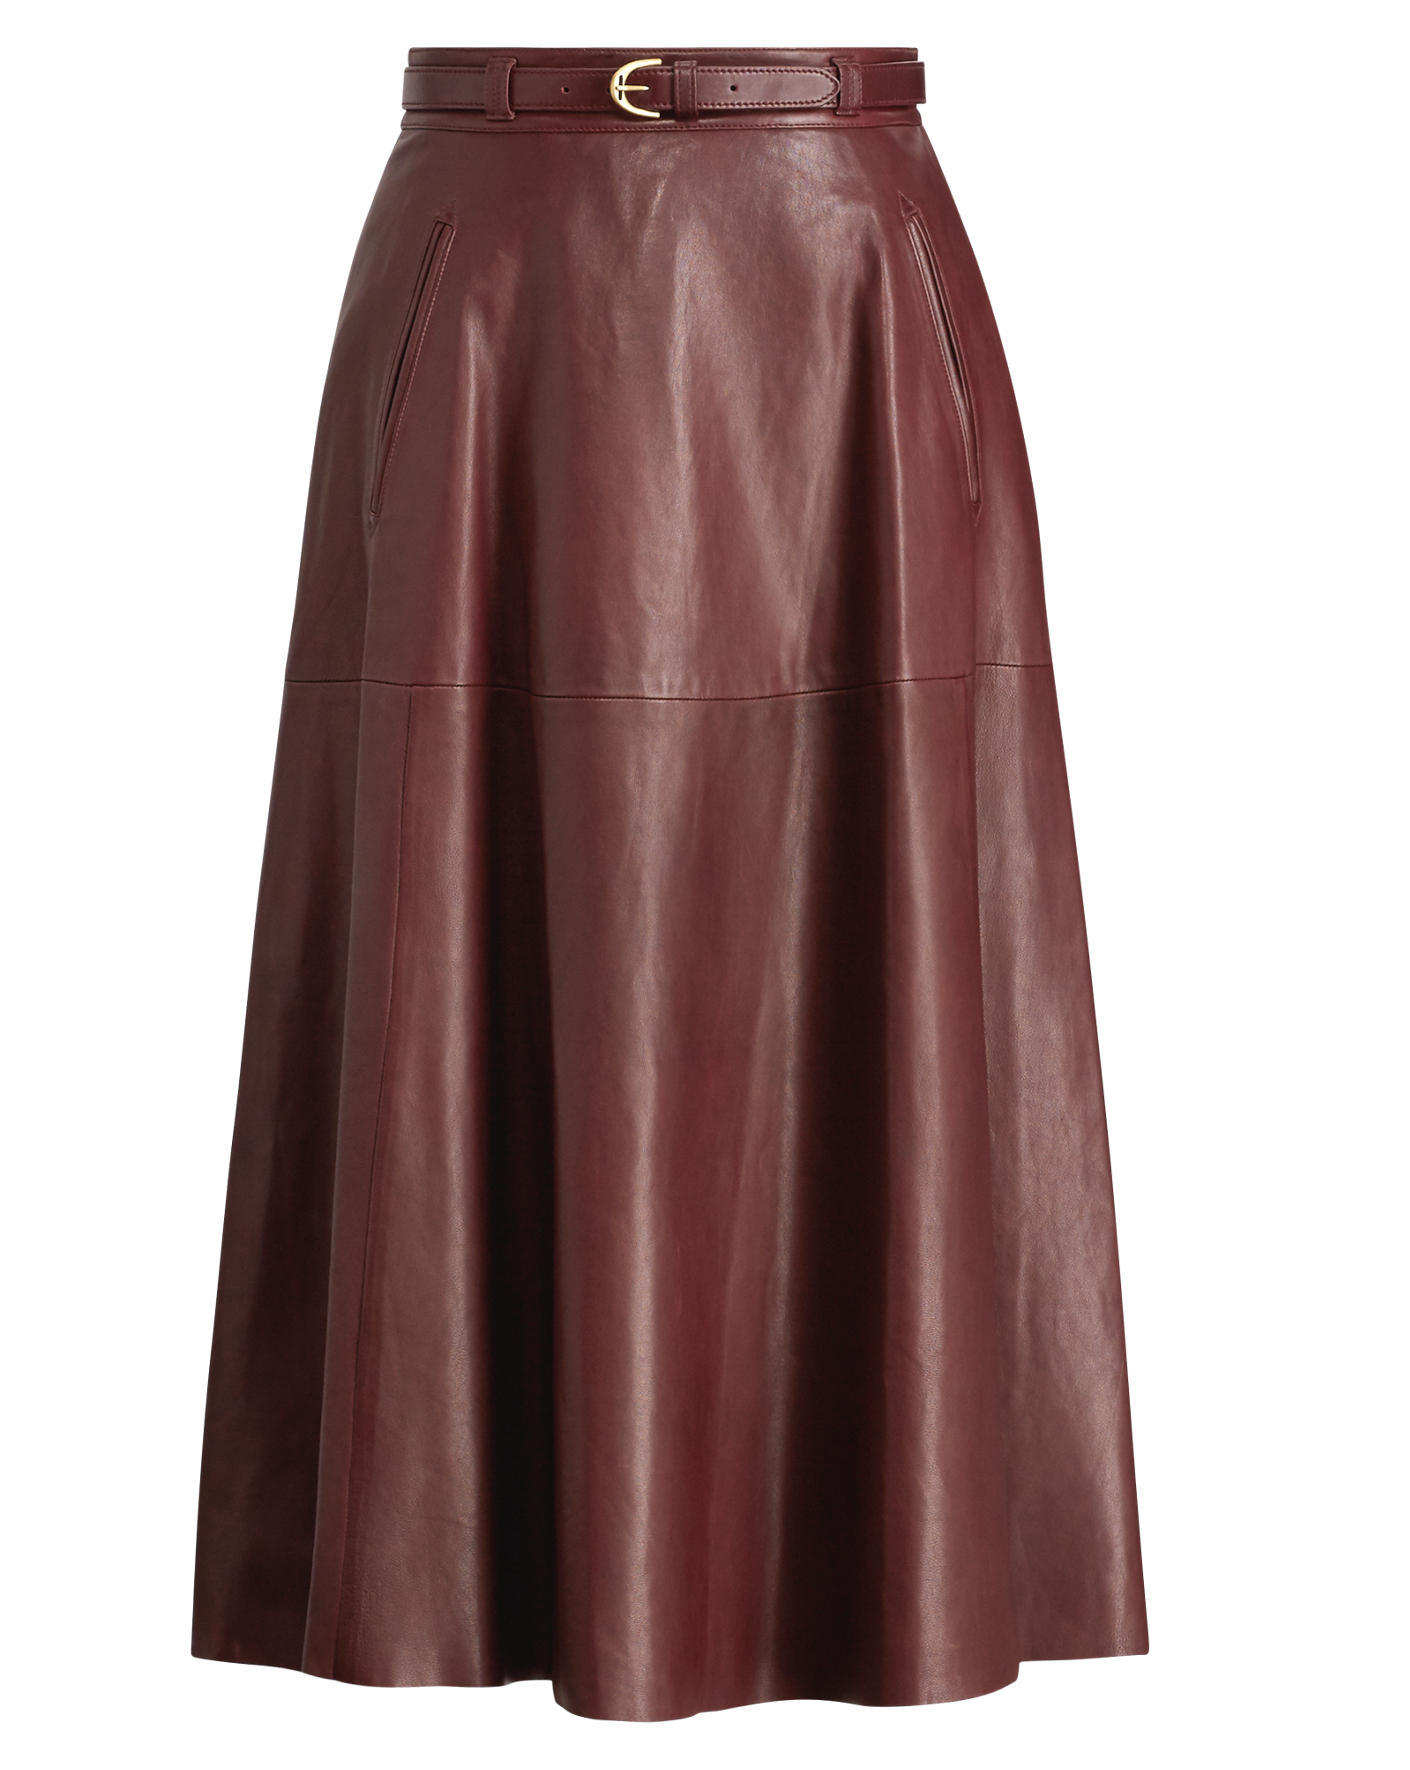 Women's Skirts - Pencil, Maxi, Wool & More | Ralph Lauren